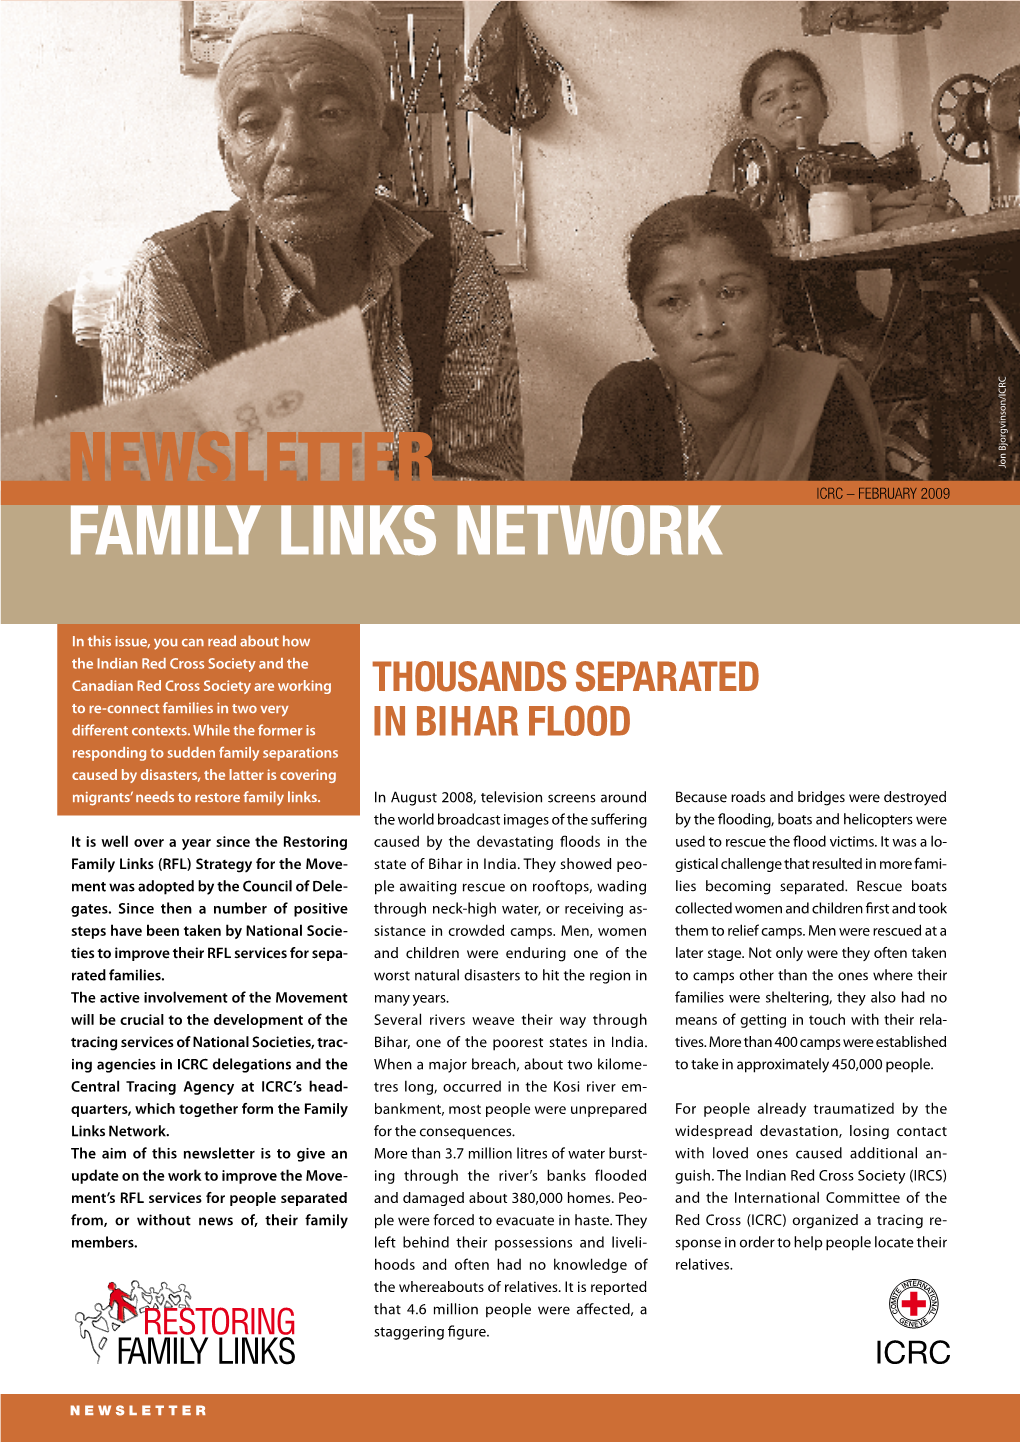 Family Links Network